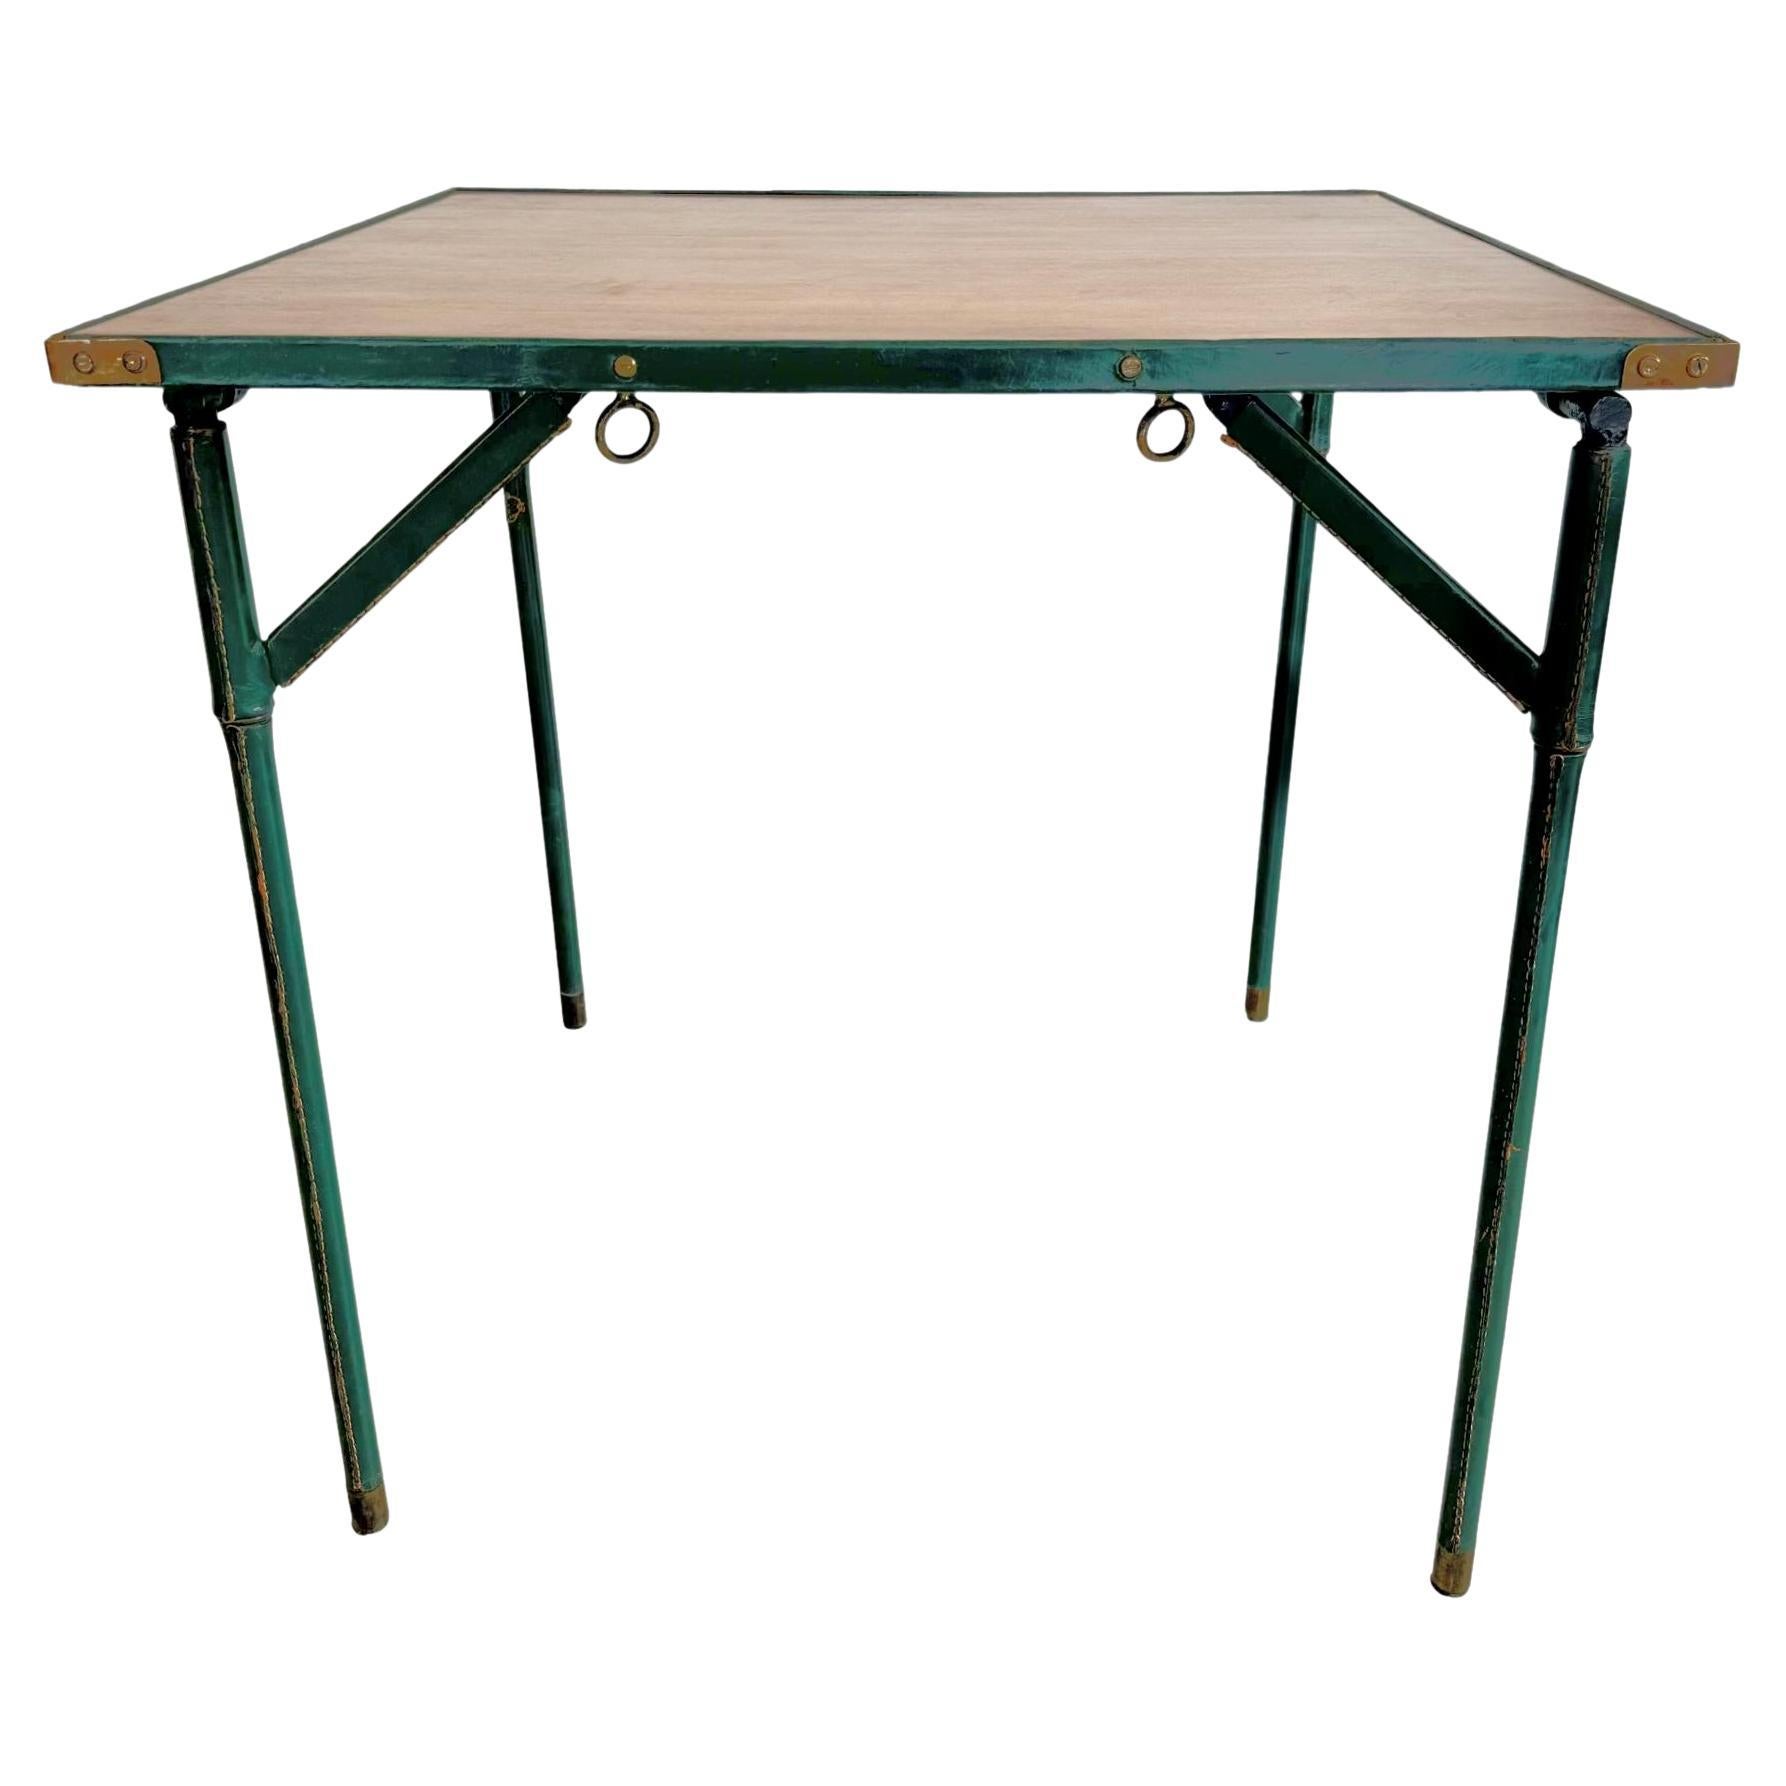 Jacques Adnet Table de jeu en bois et cuir vert, 1950 France